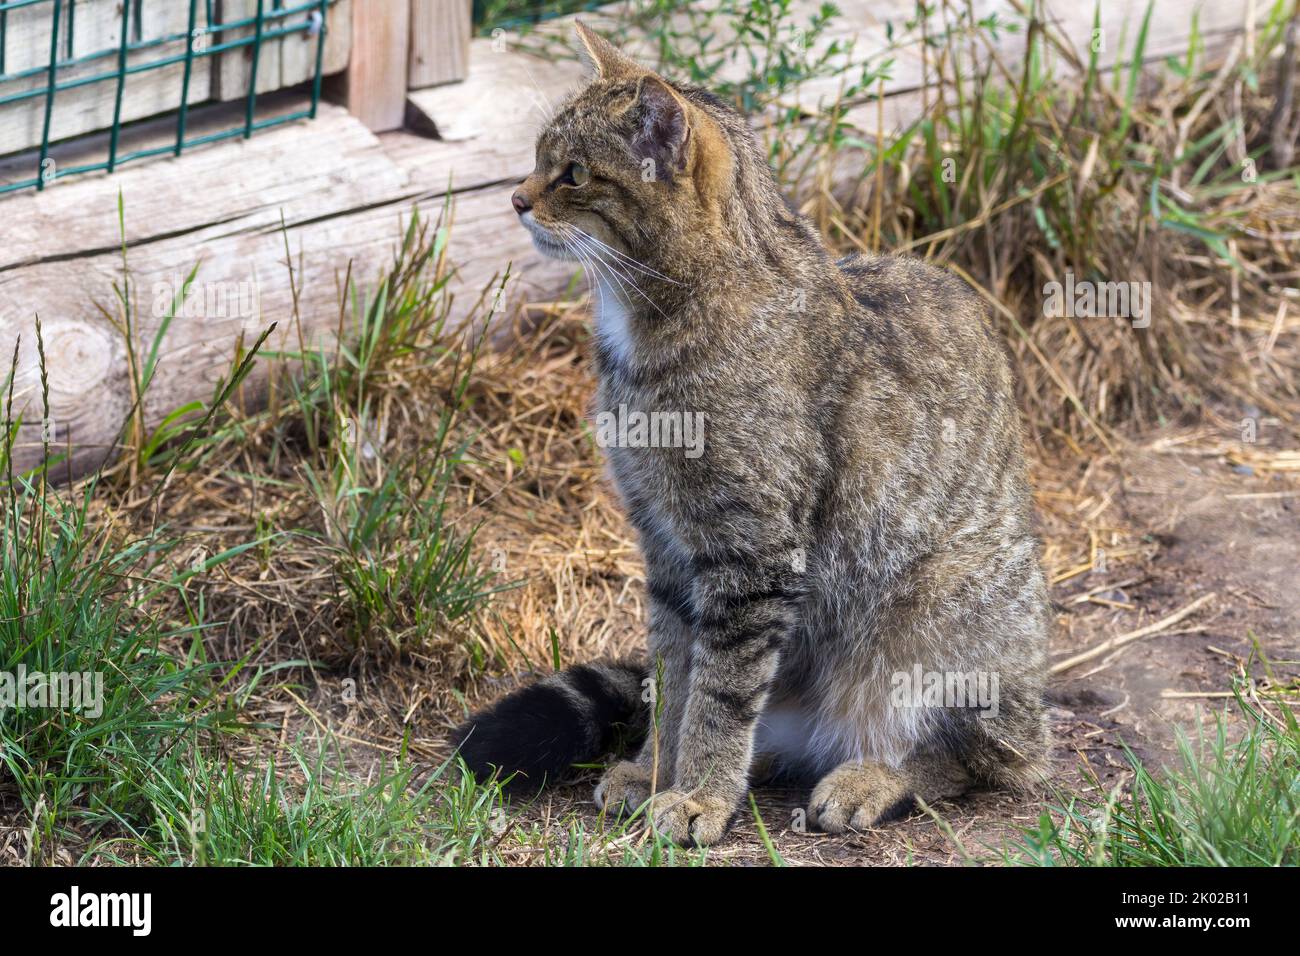 Schottische Wildkatze (Felis silvestris) Zuchtprogramm in Gefangenschaft. Große wild gestromte Katze buschig stumpf Schwanz schwarze Ringe und Spitze dunkle Streifen auf Fell Stockfoto